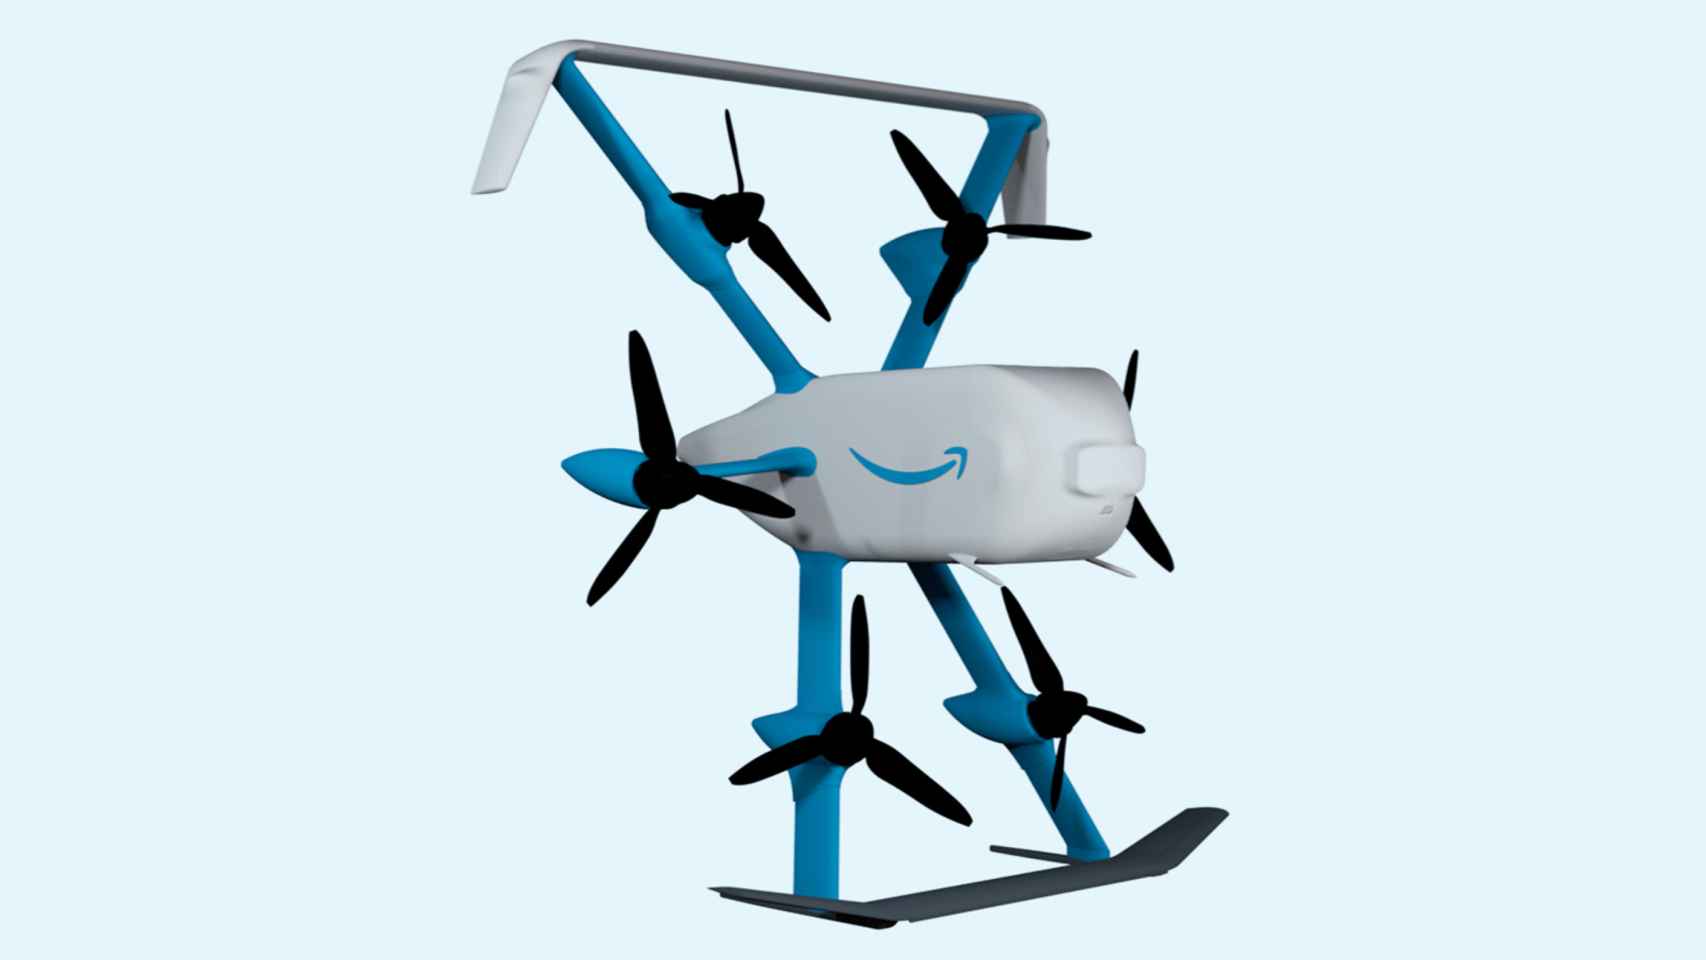 Dron Amazon MK30x